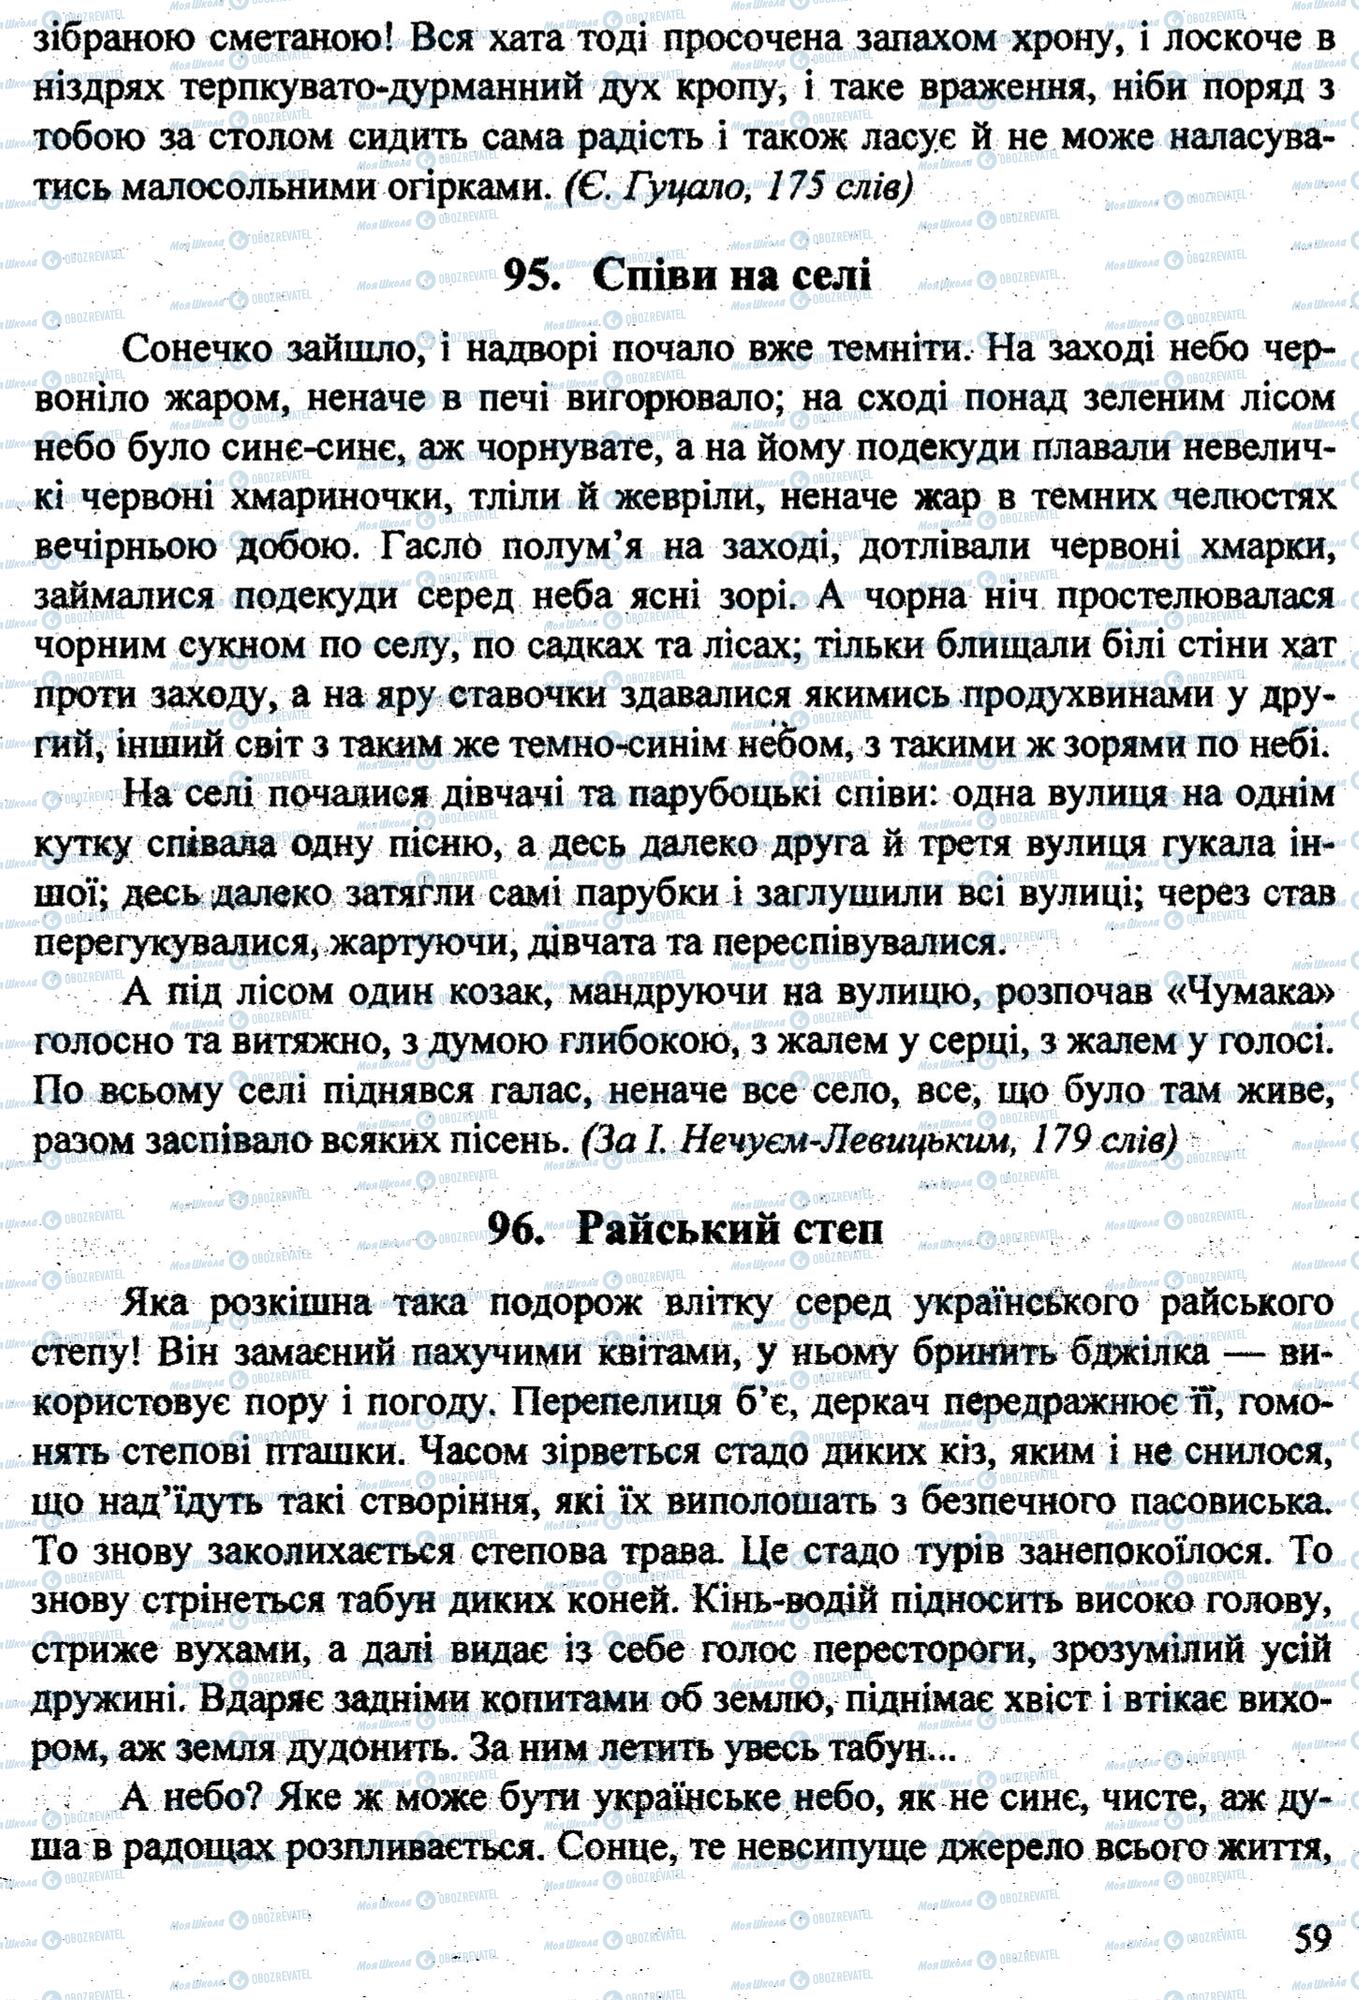 ДПА Укр мова 9 класс страница 0060